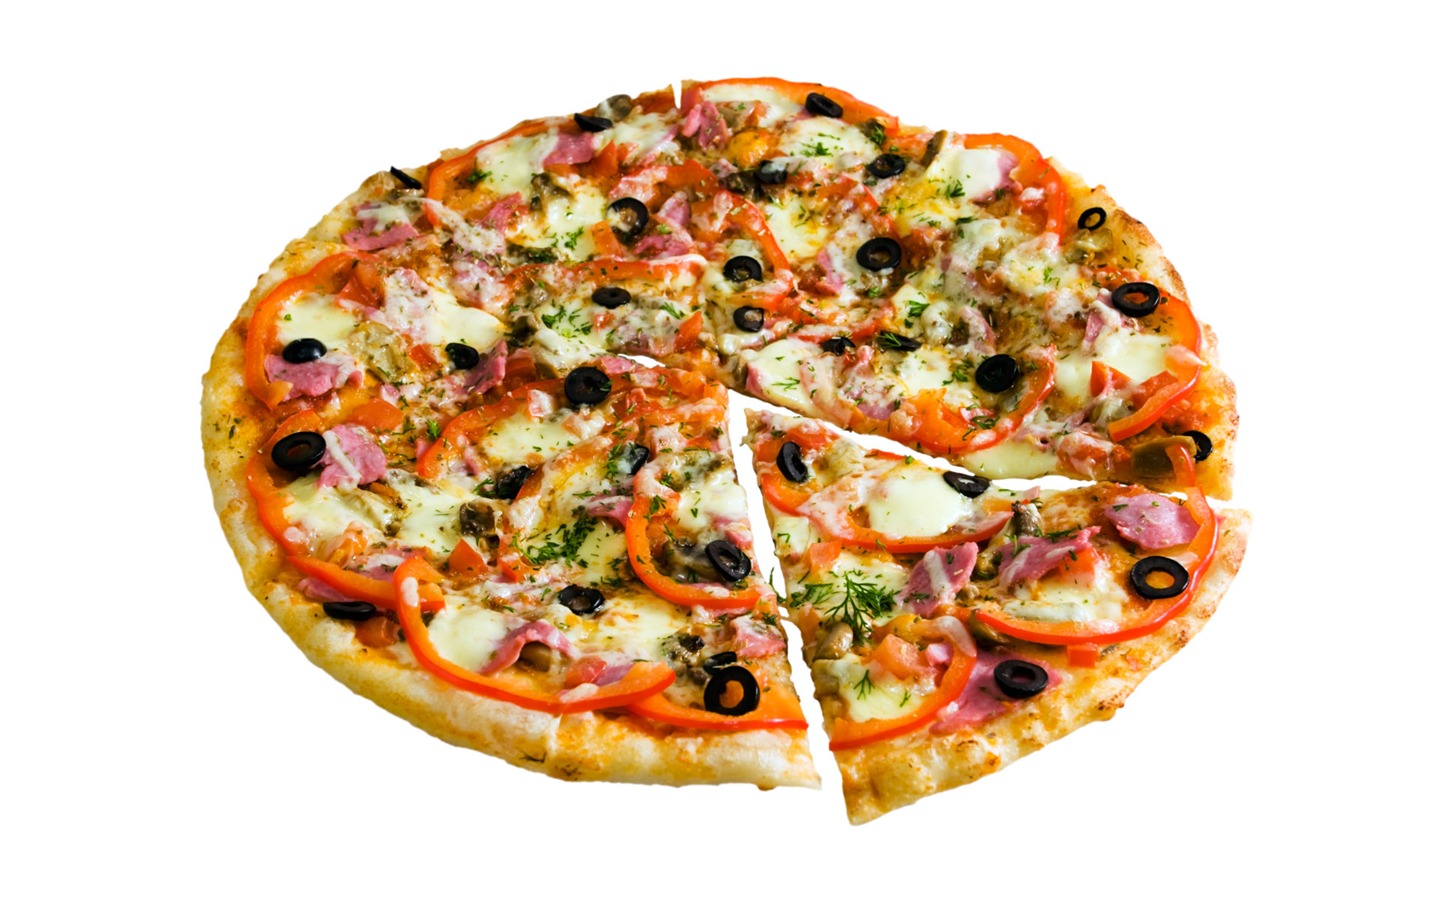 Fondos de pizzerías de Alimentos (4) #10 - 1440x900